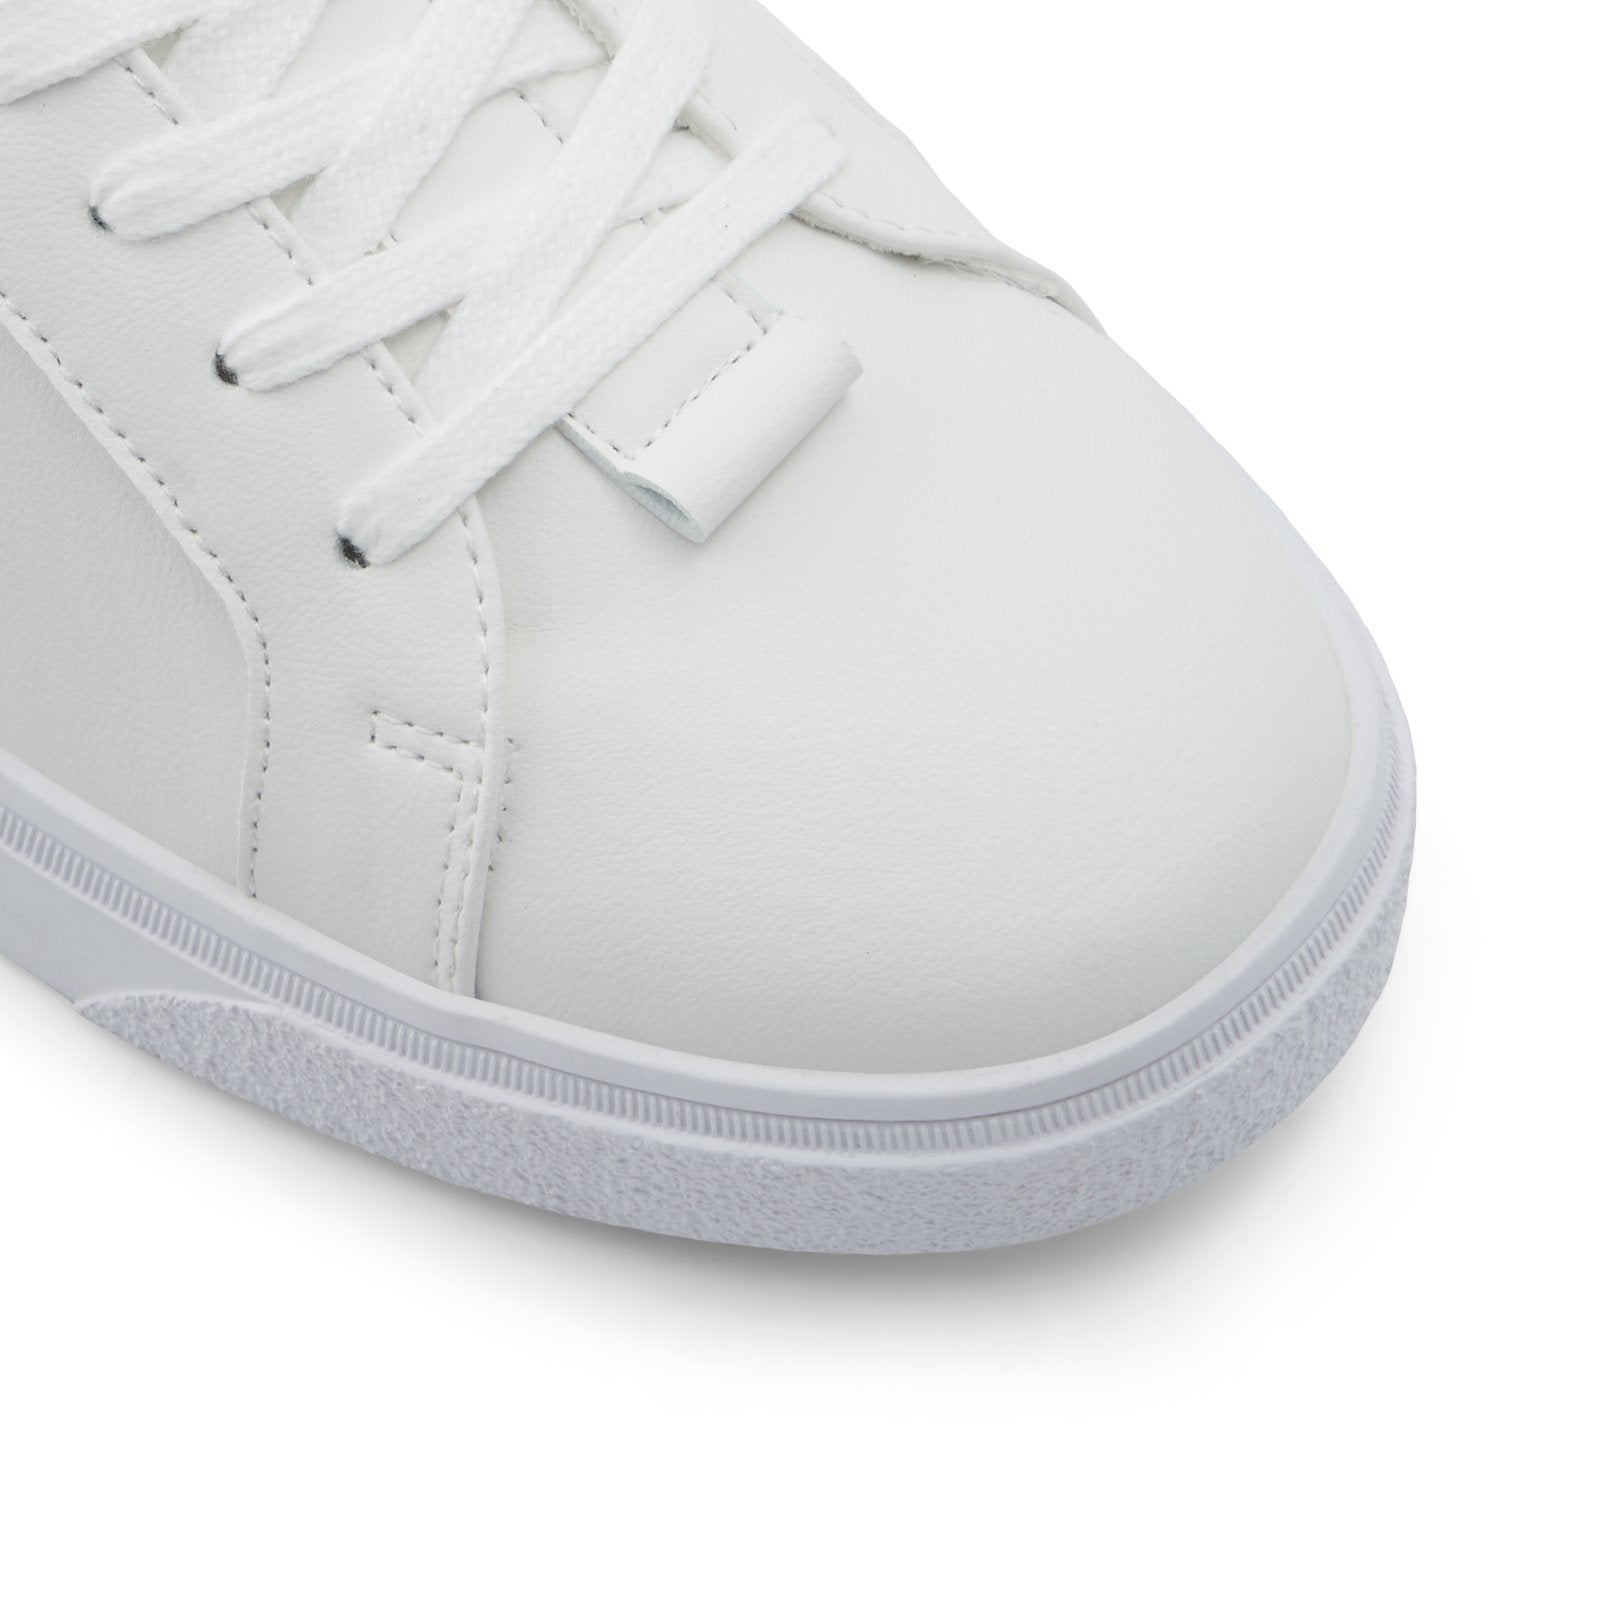 Piedmont Men Shoes - White - CALL IT SPRING KSA